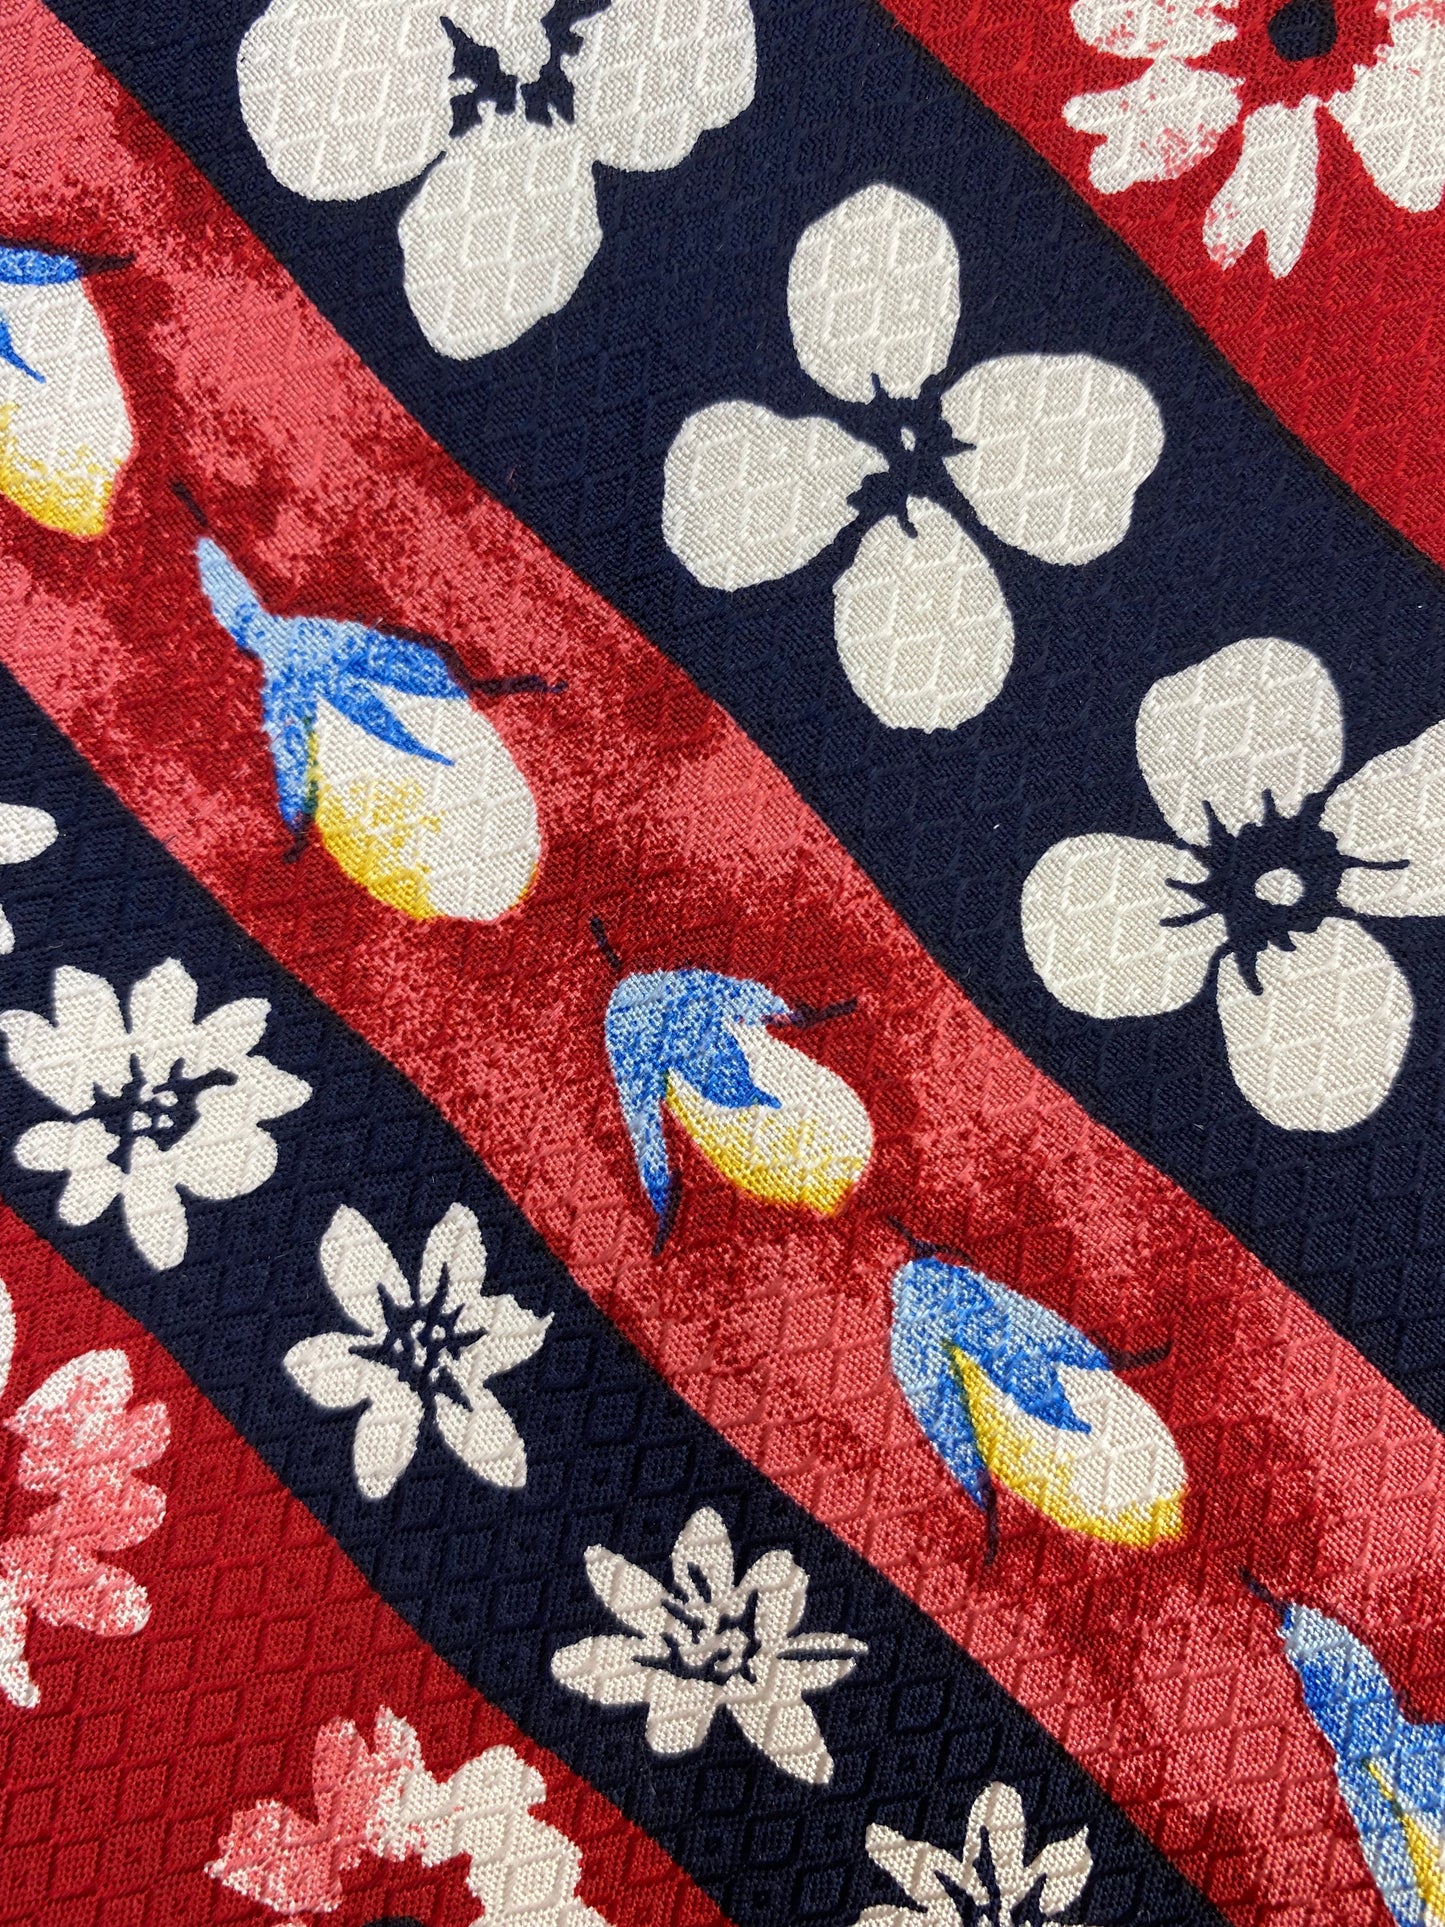 90s Deadstock Silk Necktie, Vintage Red & Navy Diagonal Stripe Floral Pattern Tie, NOS